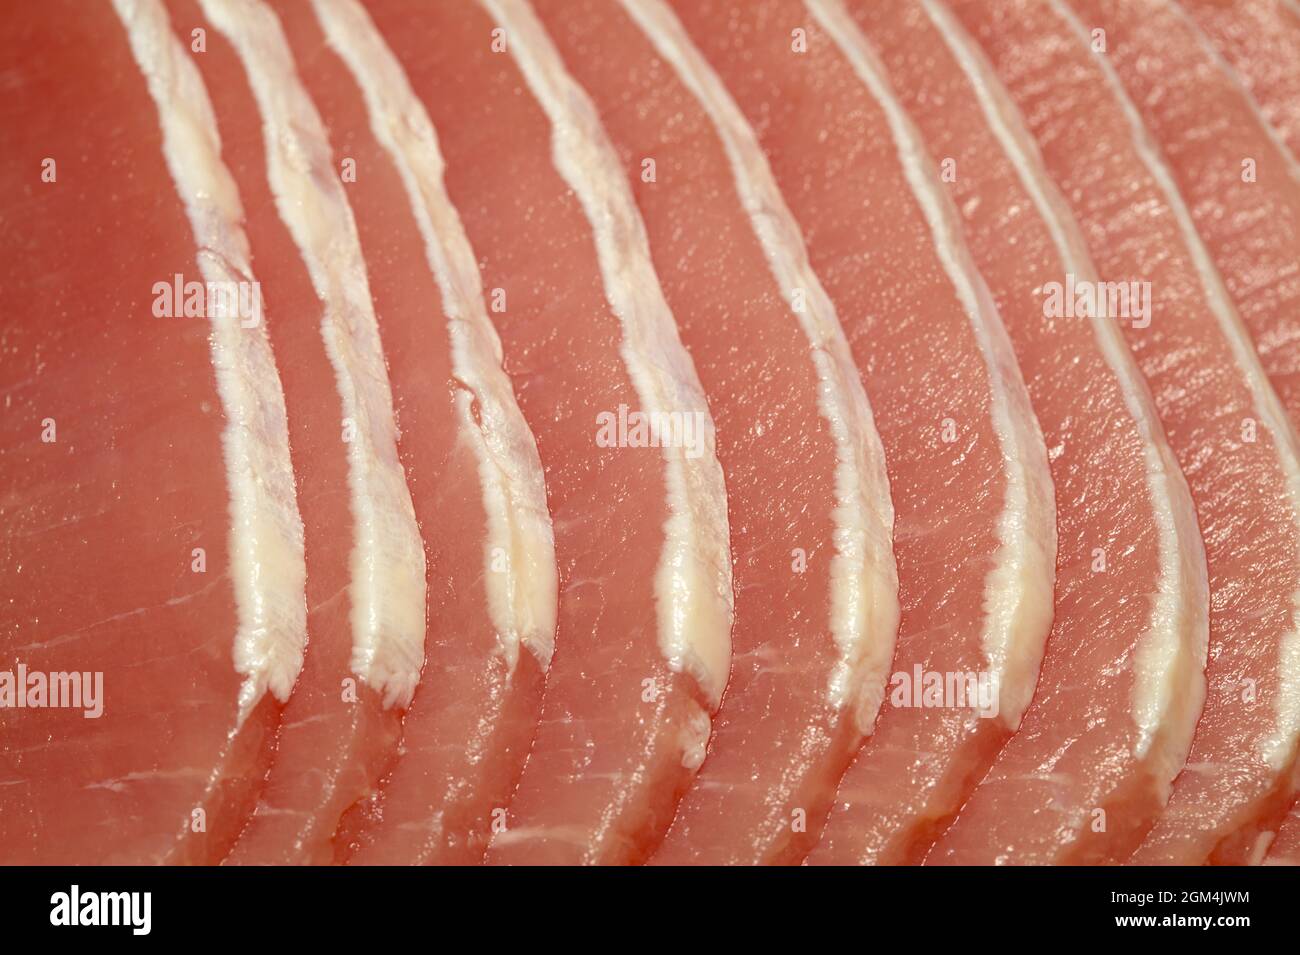 Filet de porc mariné cru coupé en fines tranches avec presque toute la graisse coupée Banque D'Images